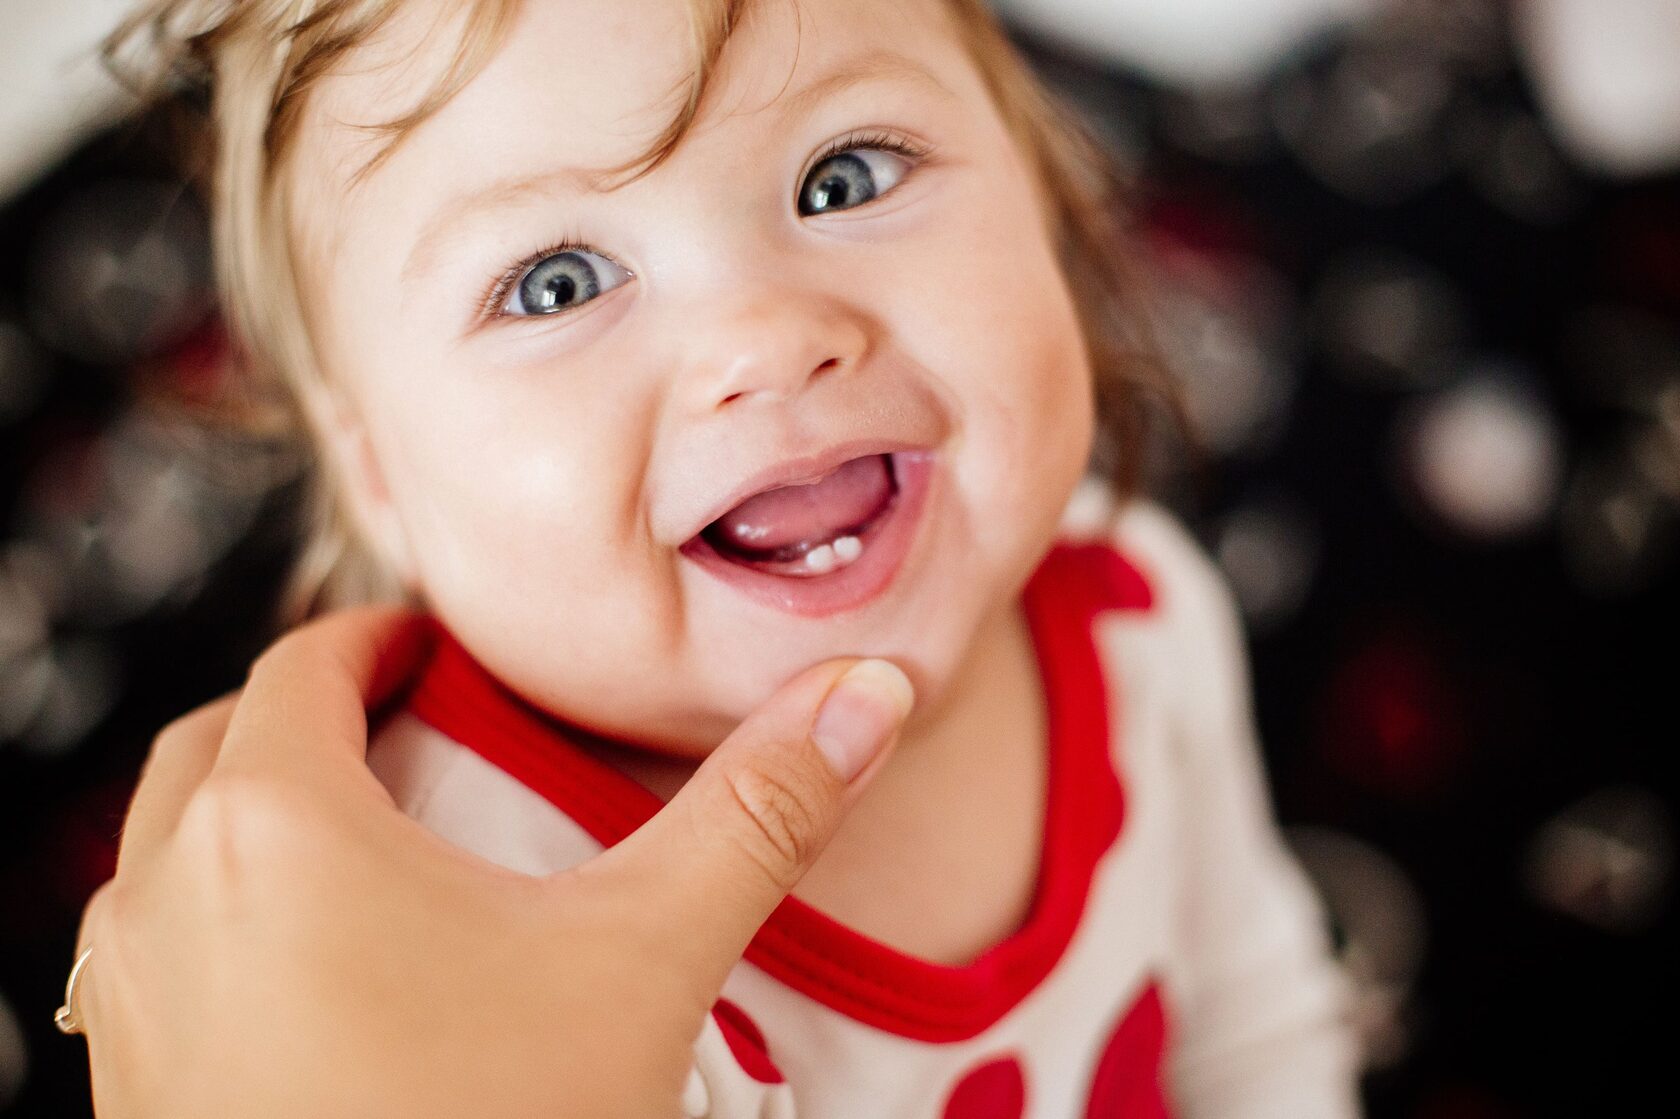 Диарея на зубы: как помочь ребенку?